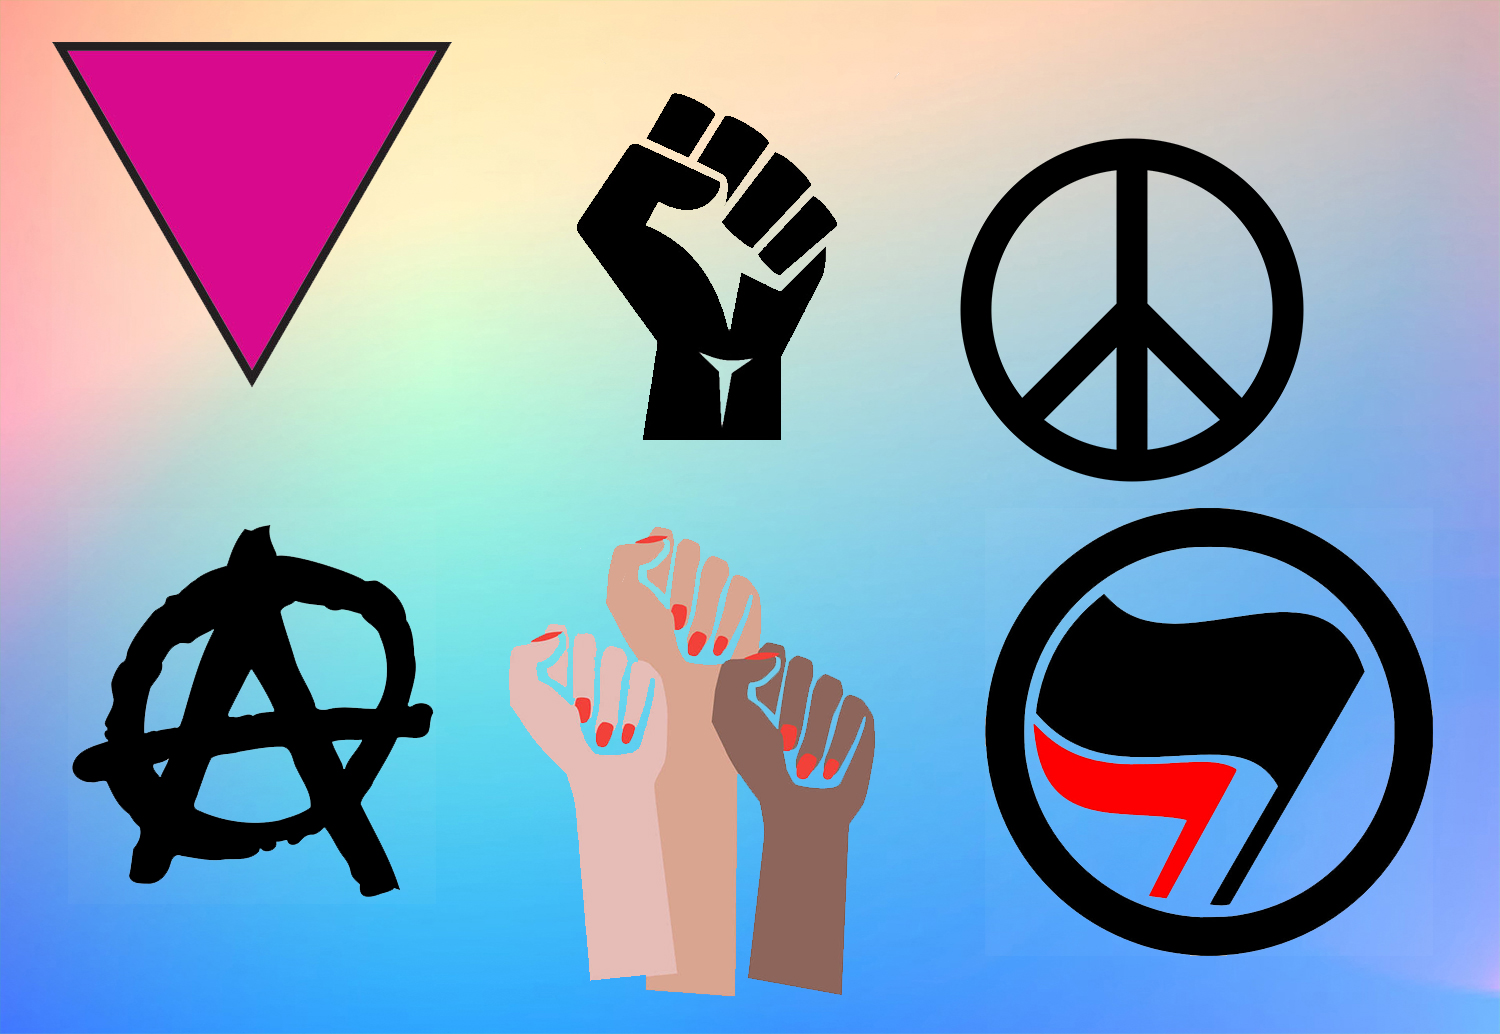 civil rights symbols